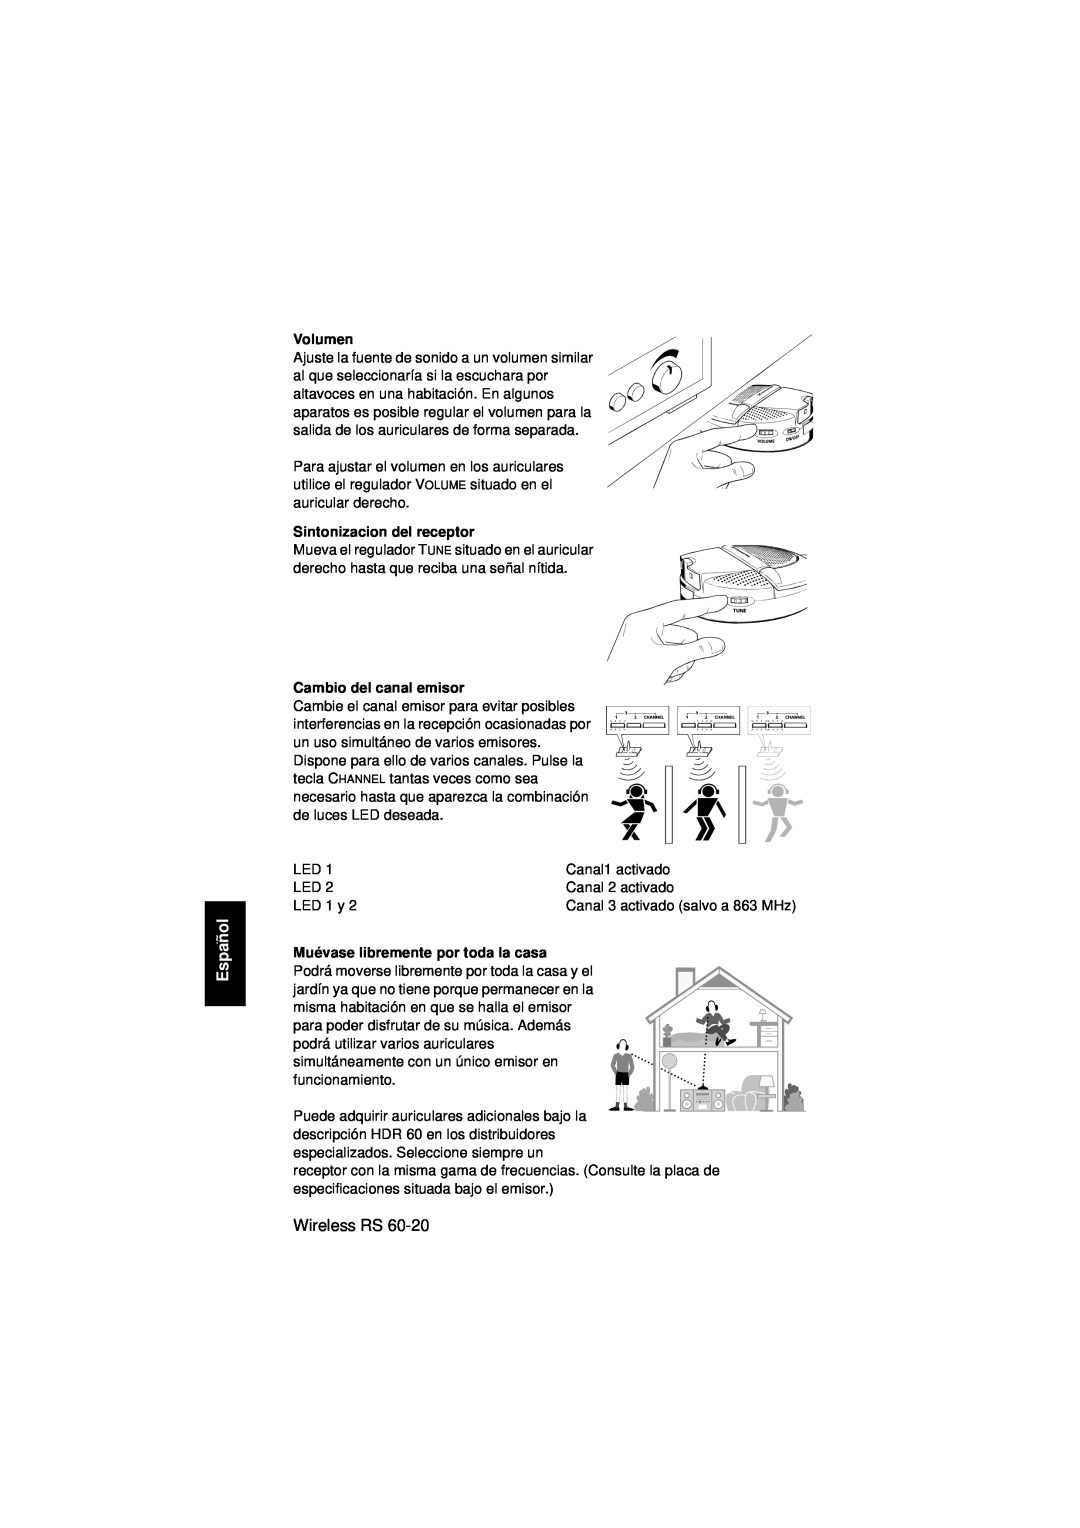 Sennheiser Wireless RS 60 instruction manual Español, Volumen, Sintonizacion del receptor, Cambio del canal emisor 